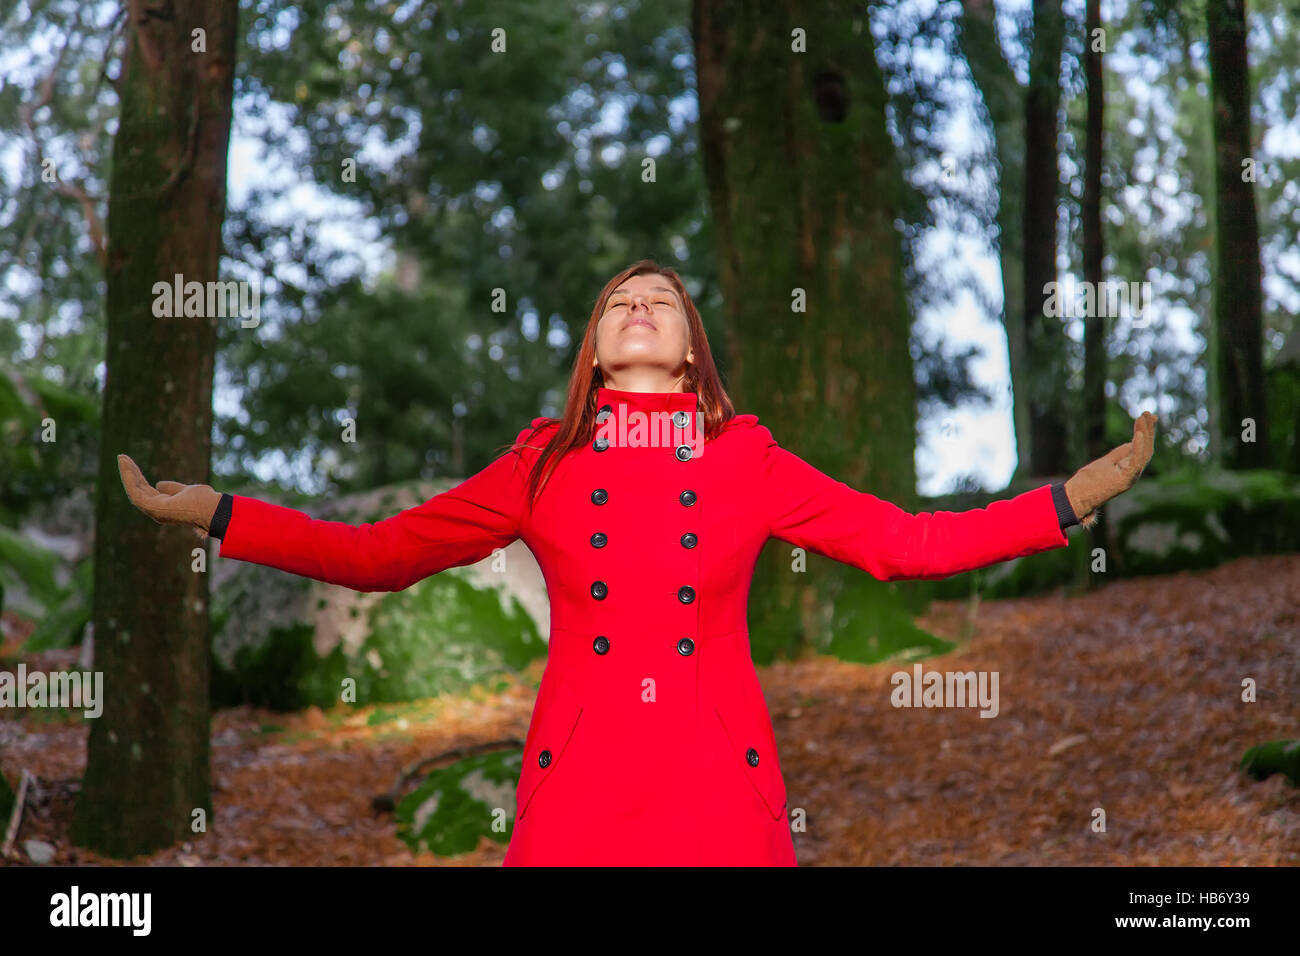 Frau genießen die Wärme im Winter Sonnenlicht an einem Wald trägt einen roten Mantel Stockfoto